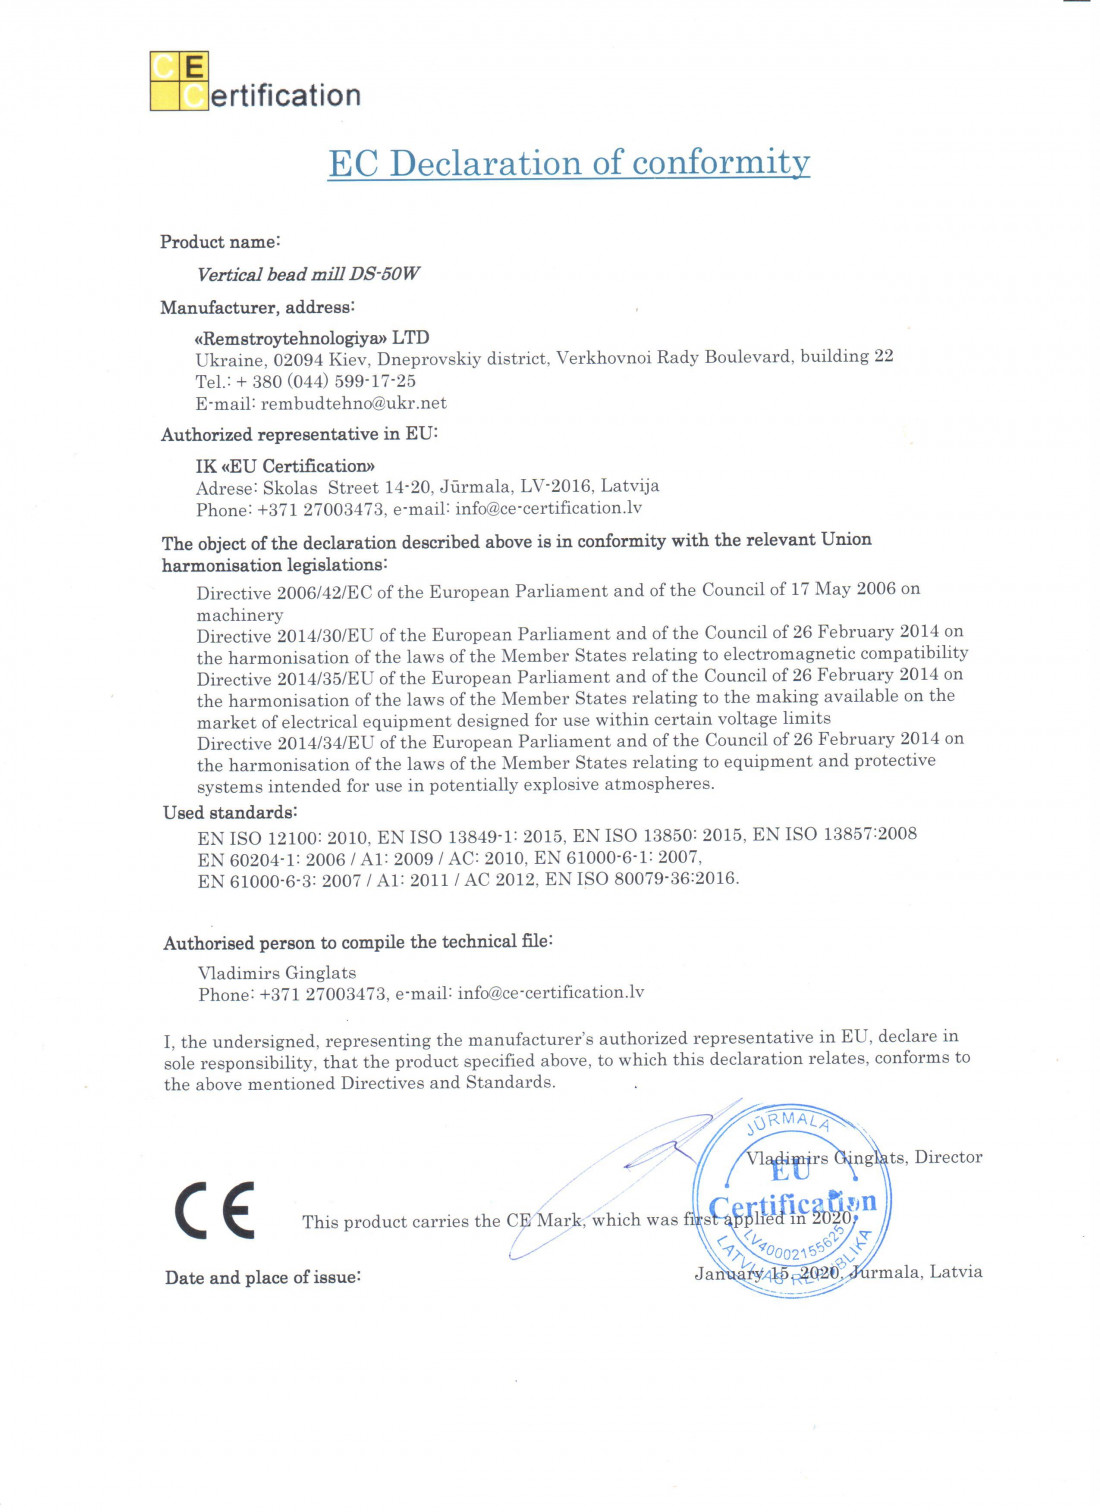 EC Certification EC Declaration of conformity (compliance) – ES Atbilstības deklarācija